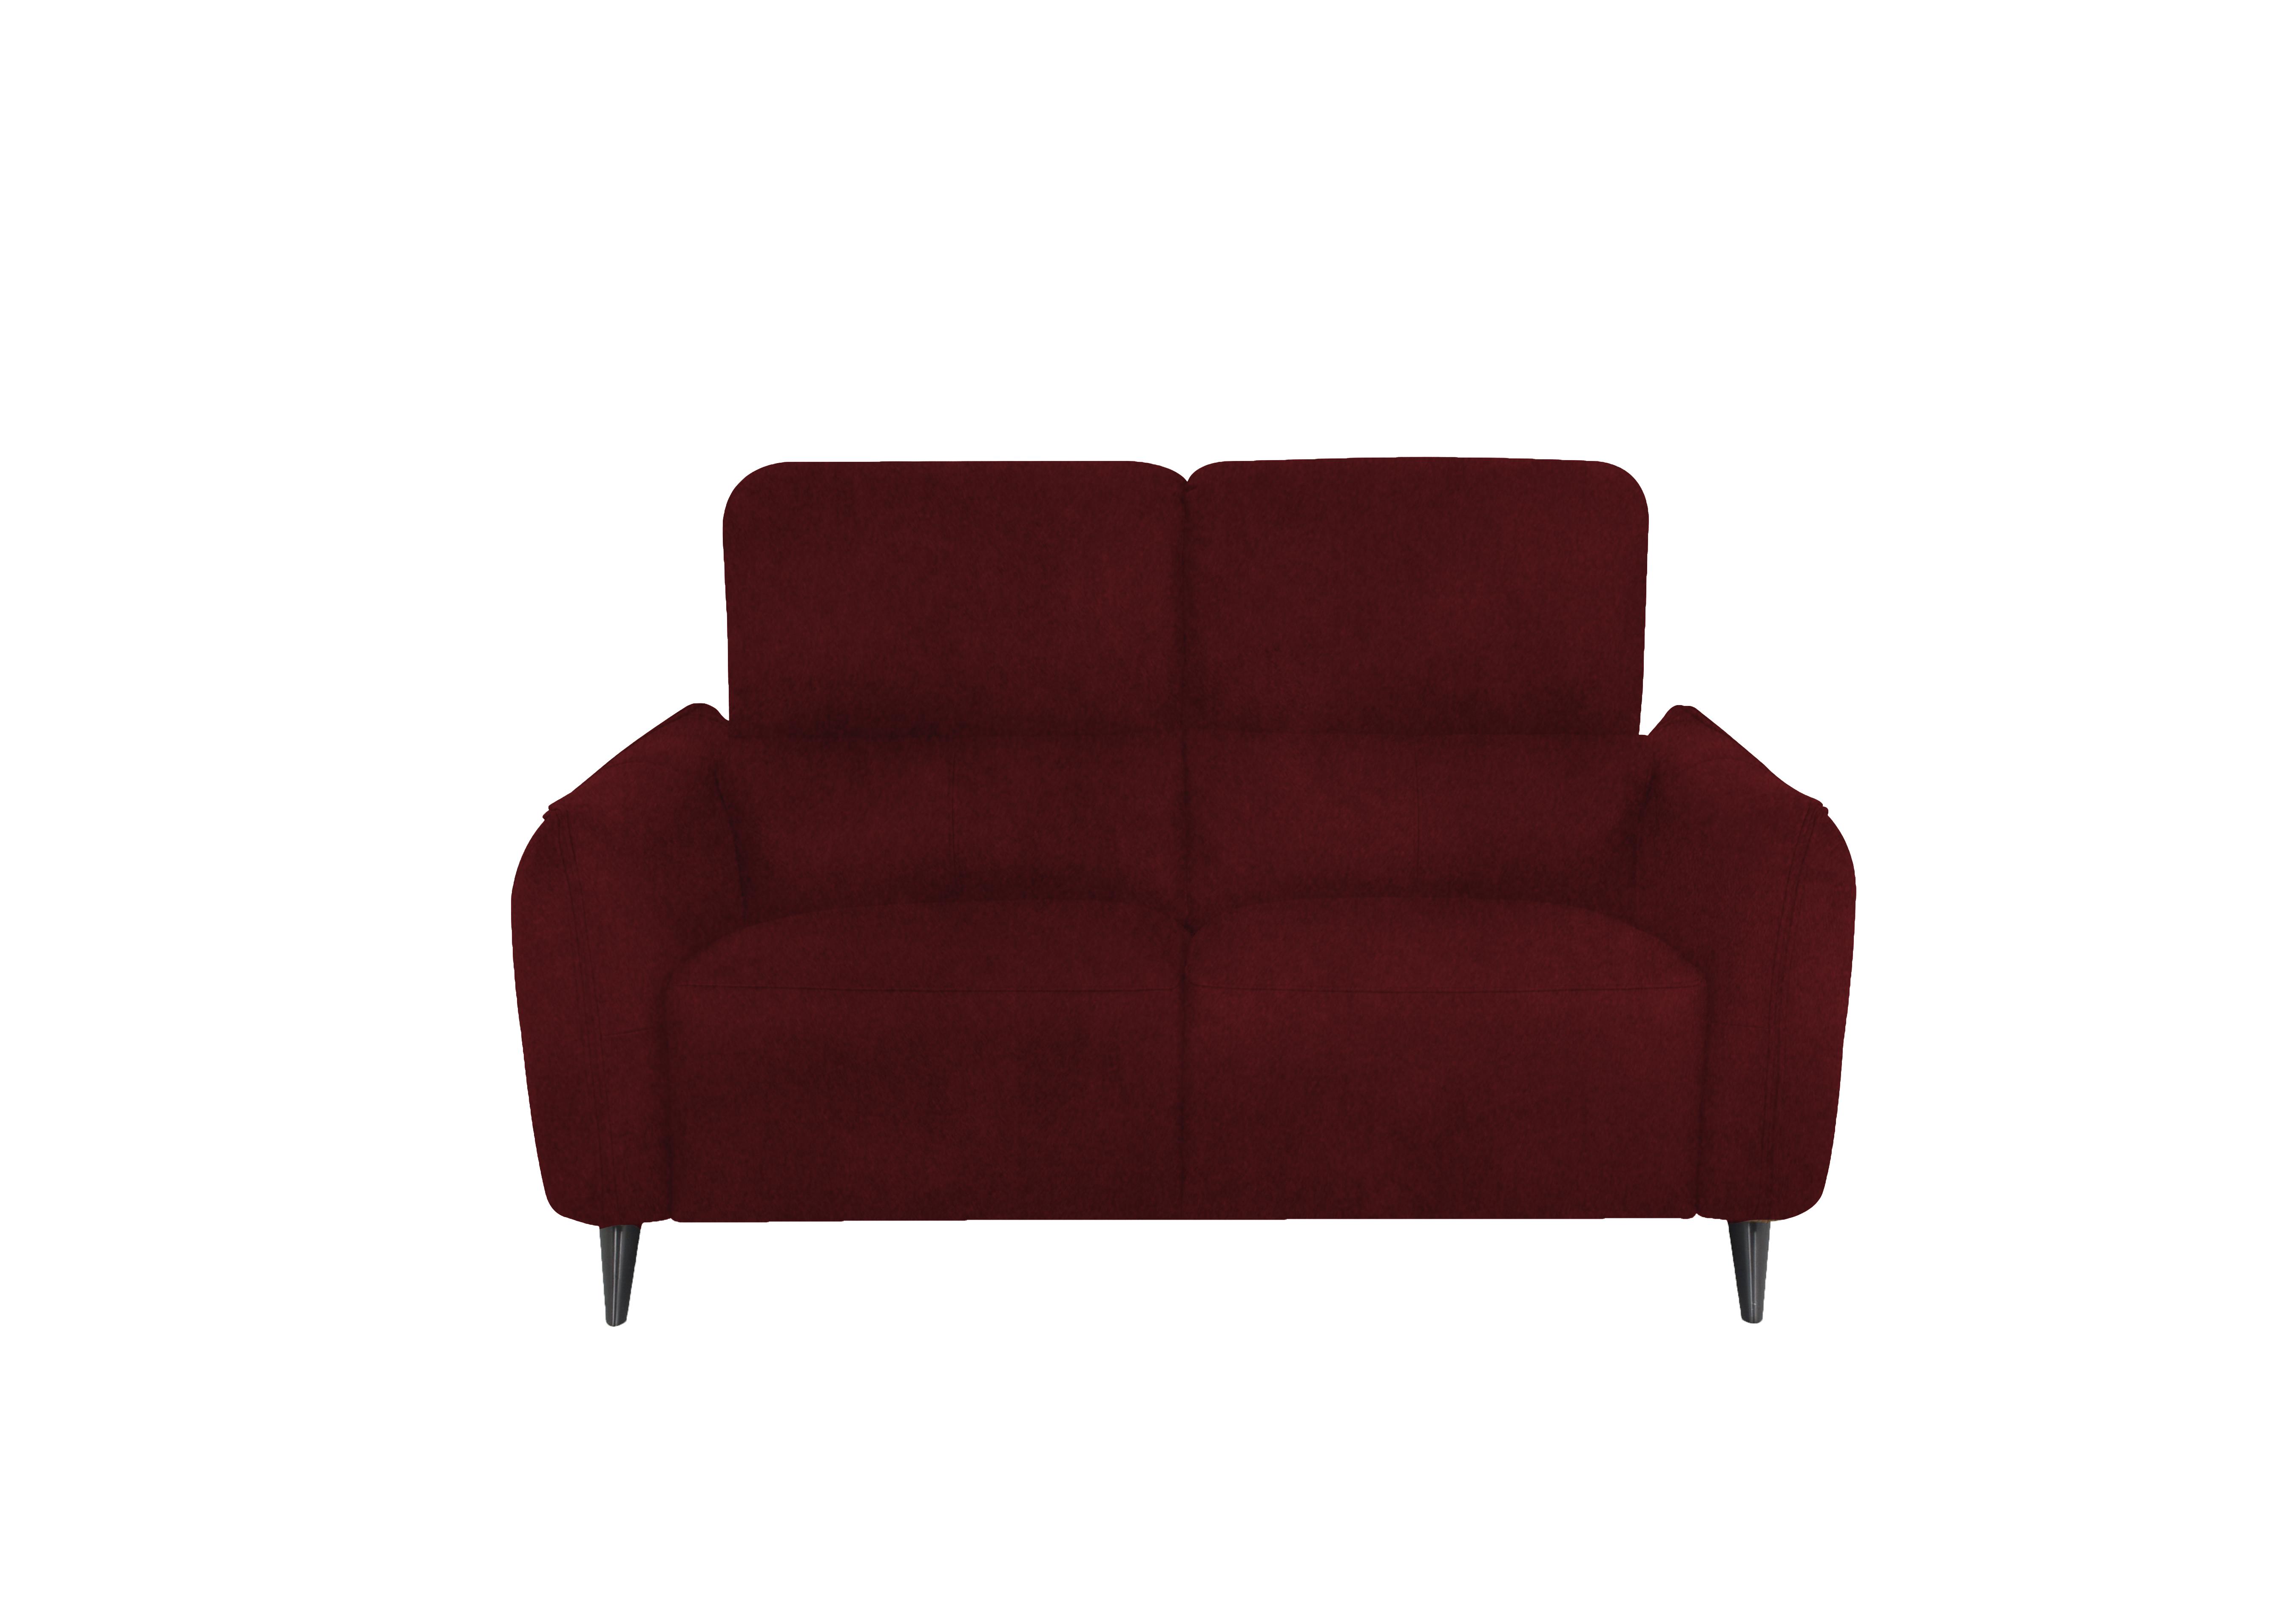 Maddox 2 Seater Fabric Sofa in Fab-Meg-R65 Burgundy on Furniture Village